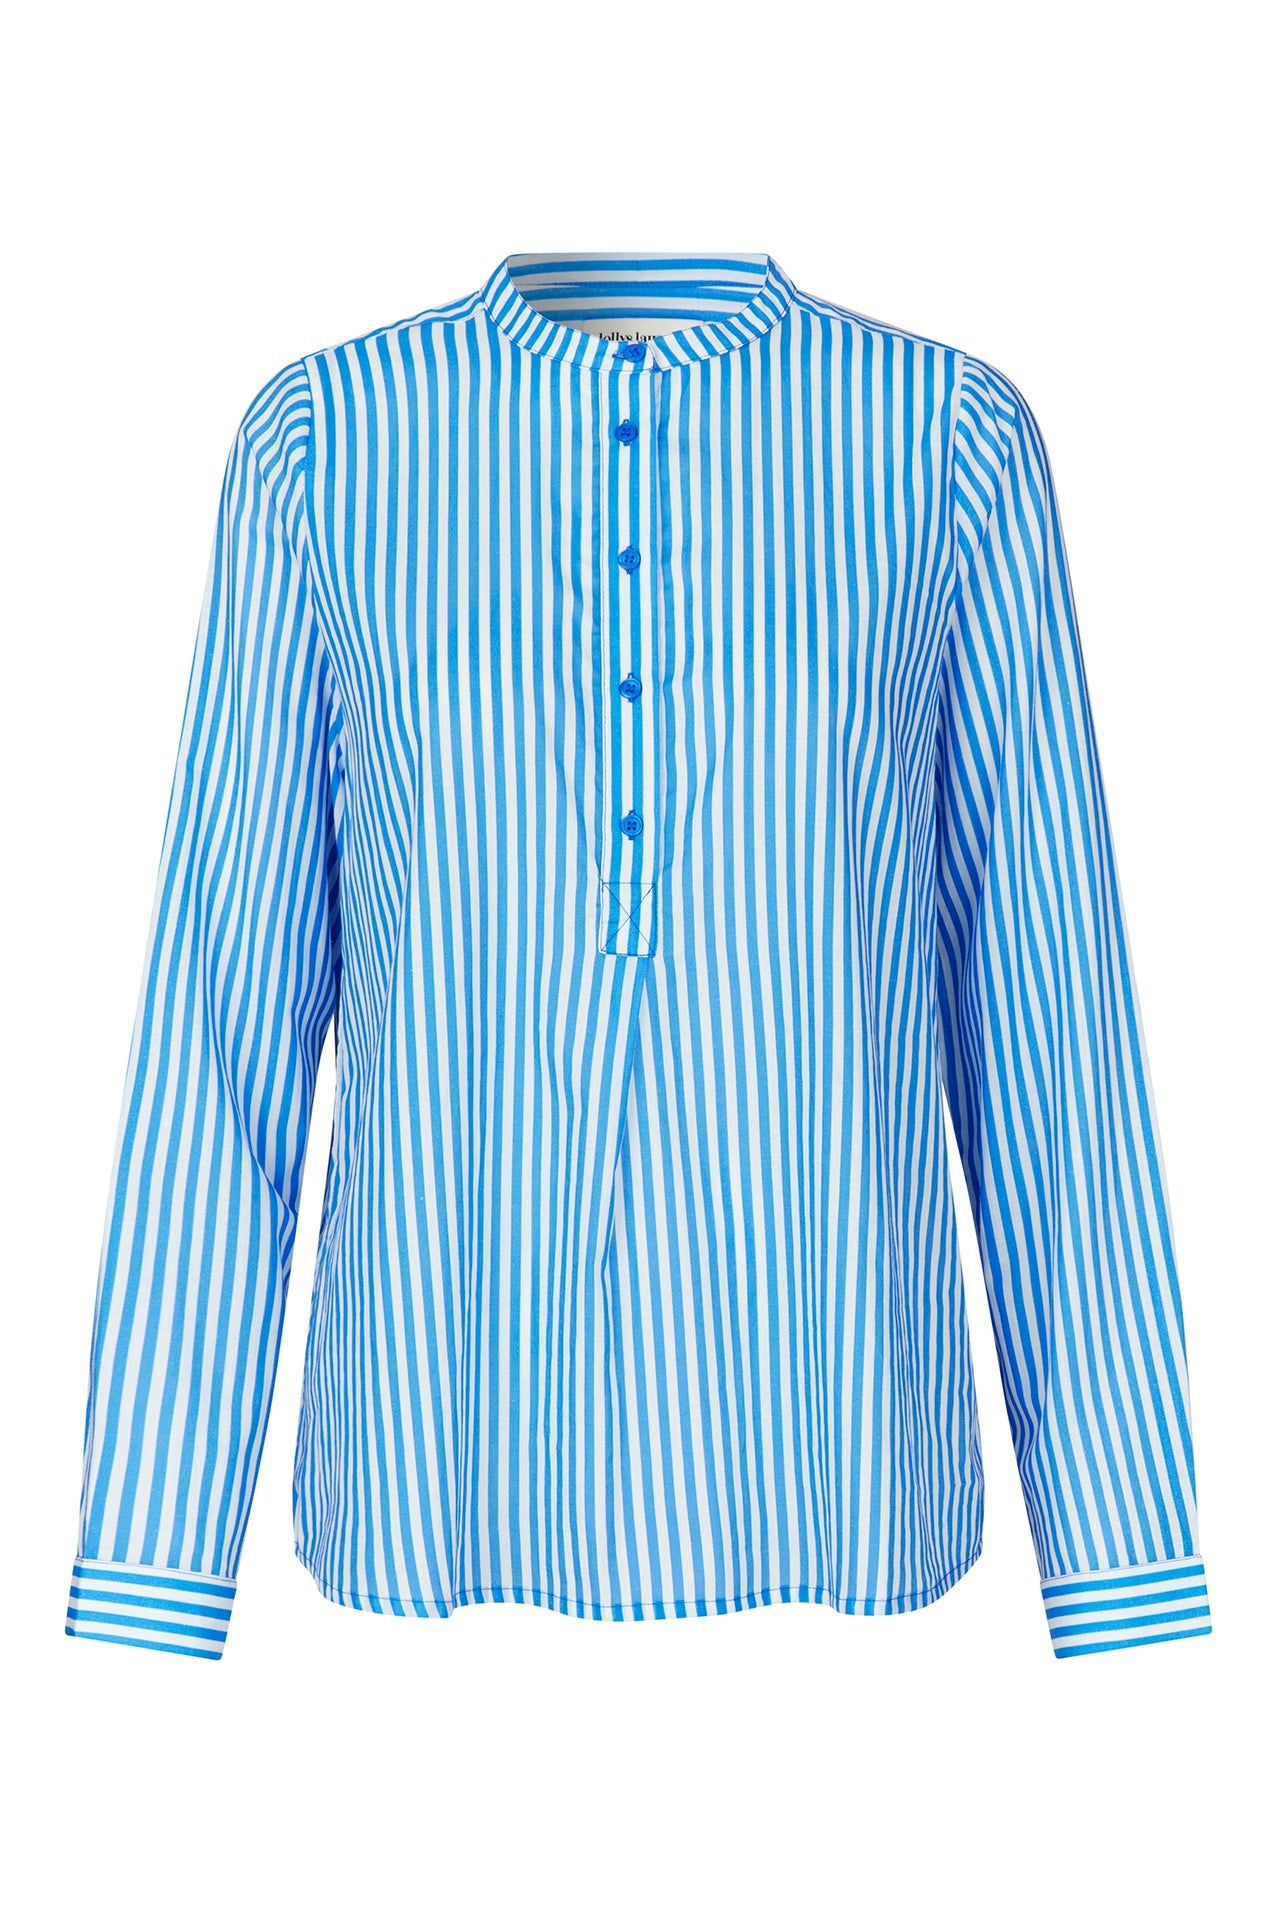 Lollys Laundry LuxLL Shirt LS Shirt 80 Stripe